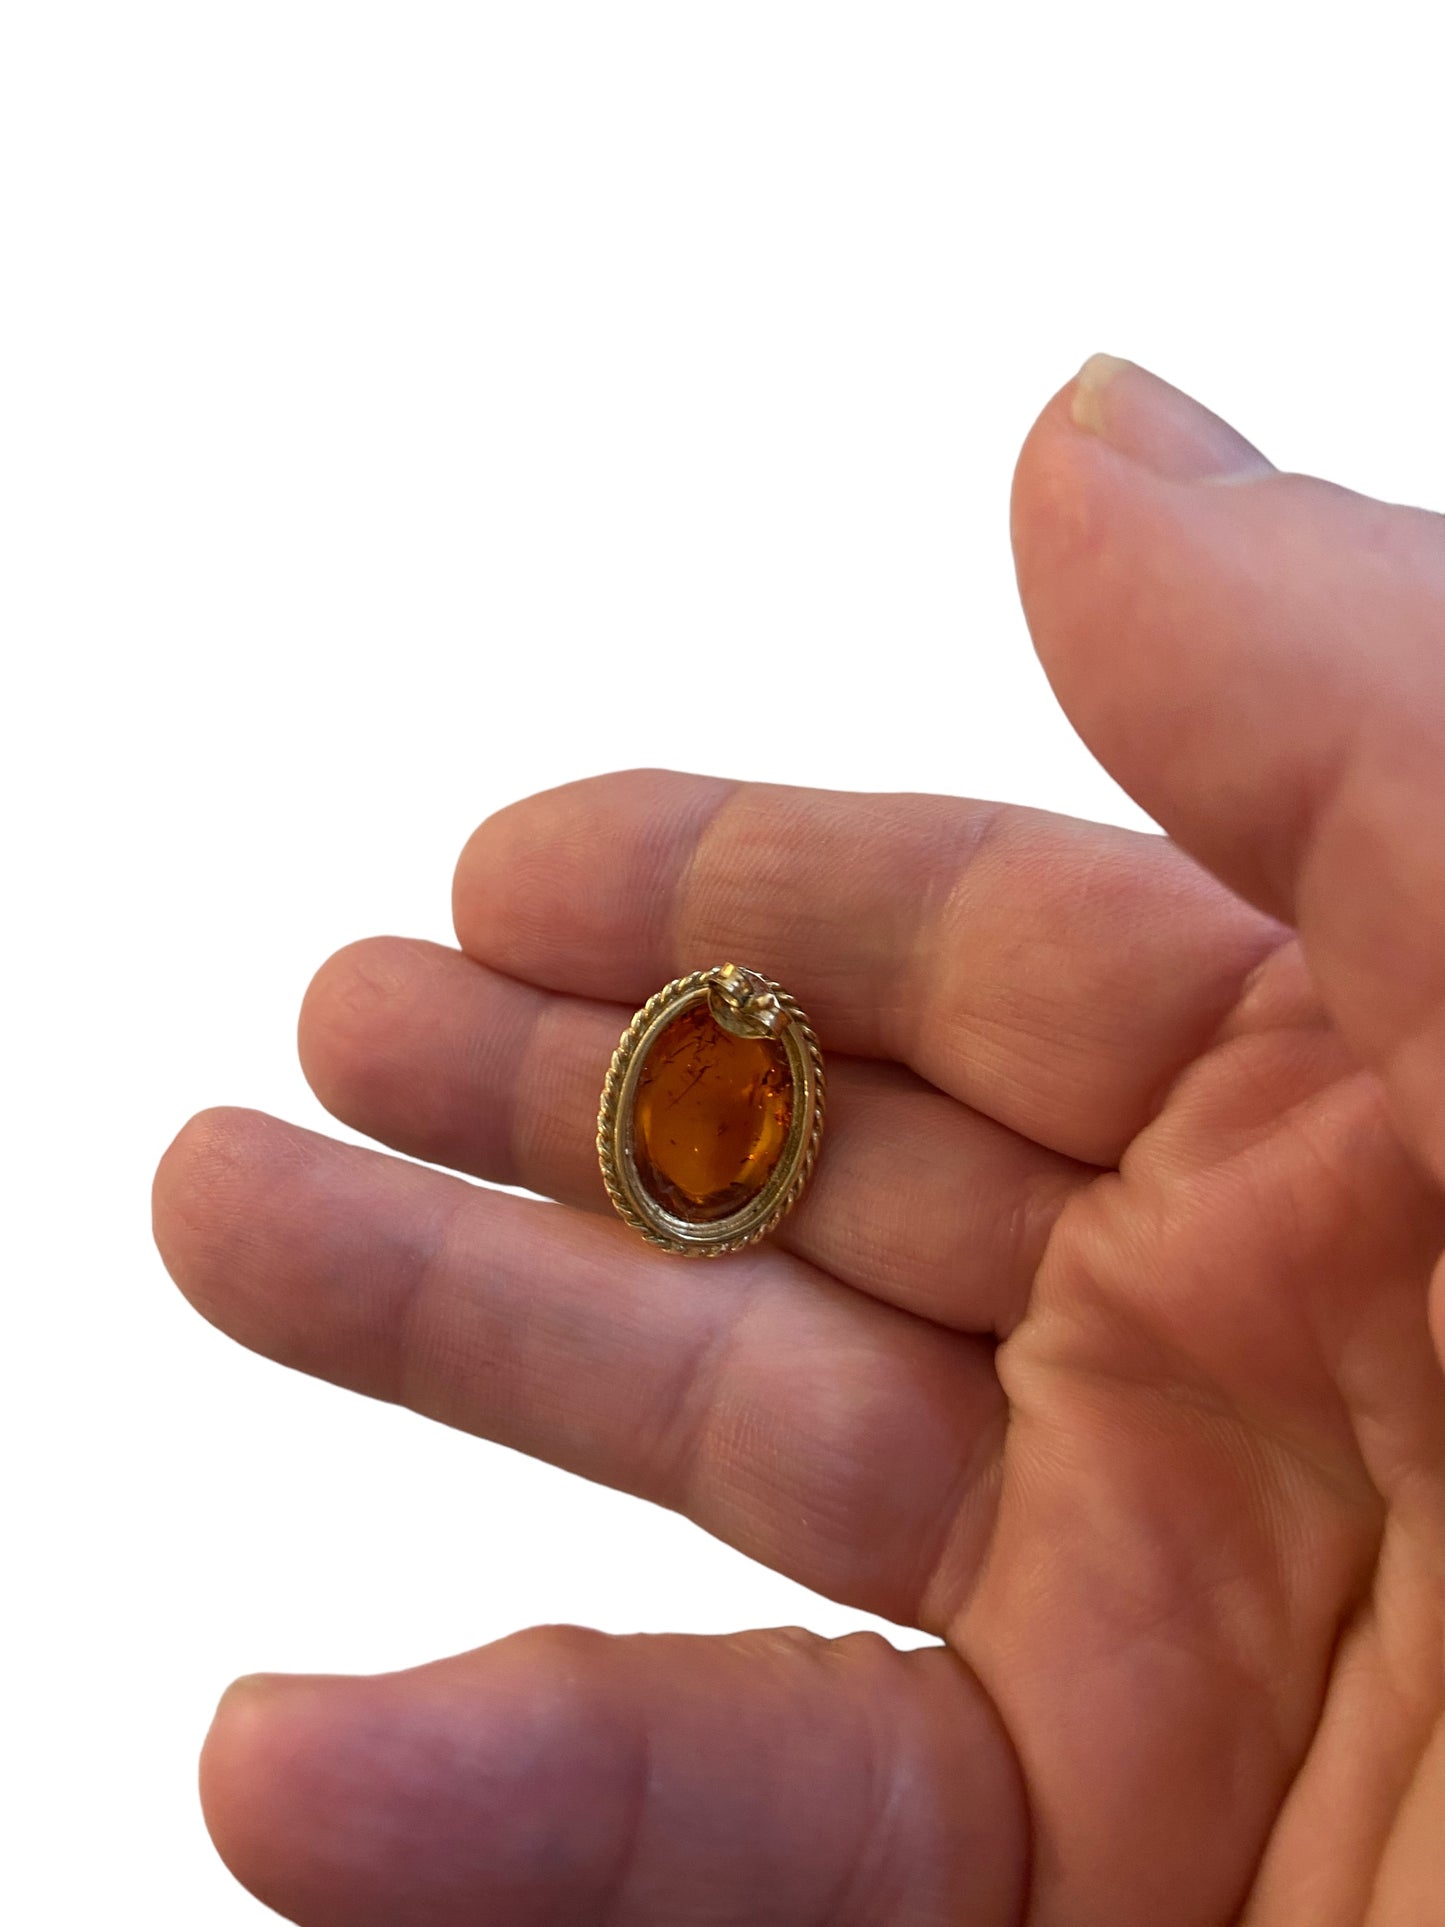 9ct vintage / pre owned amber earrings